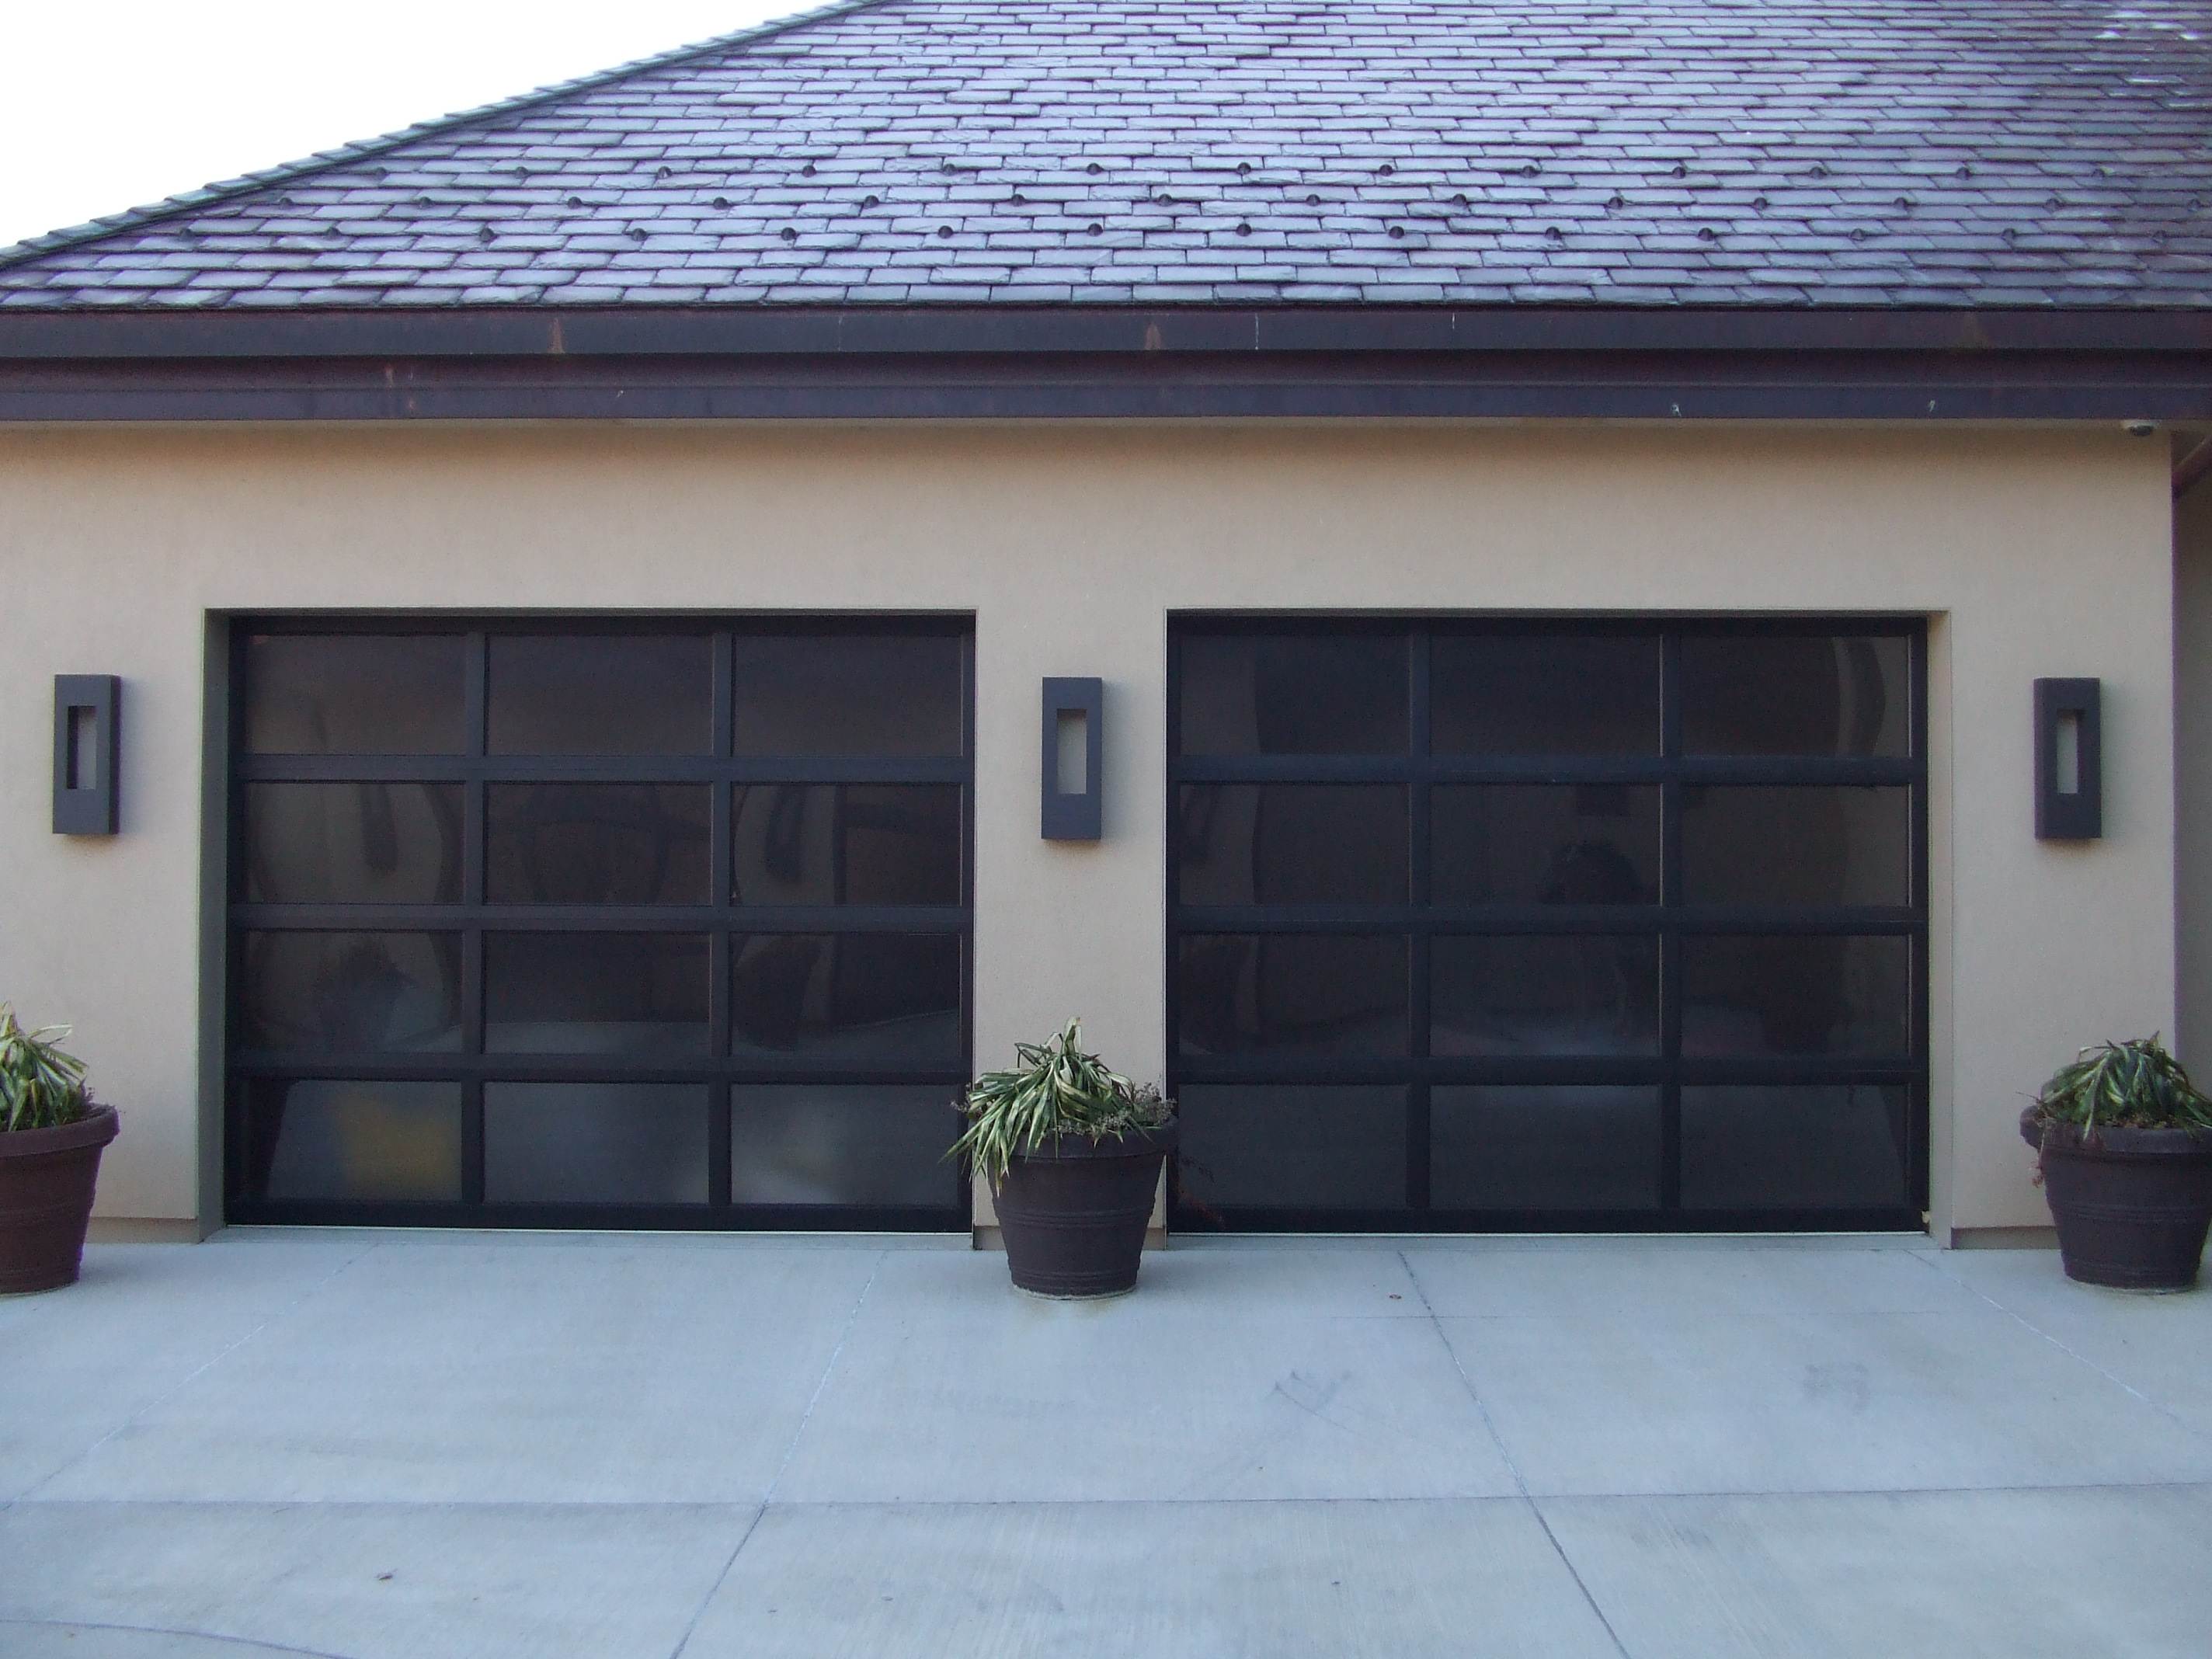 A safe and working garage door